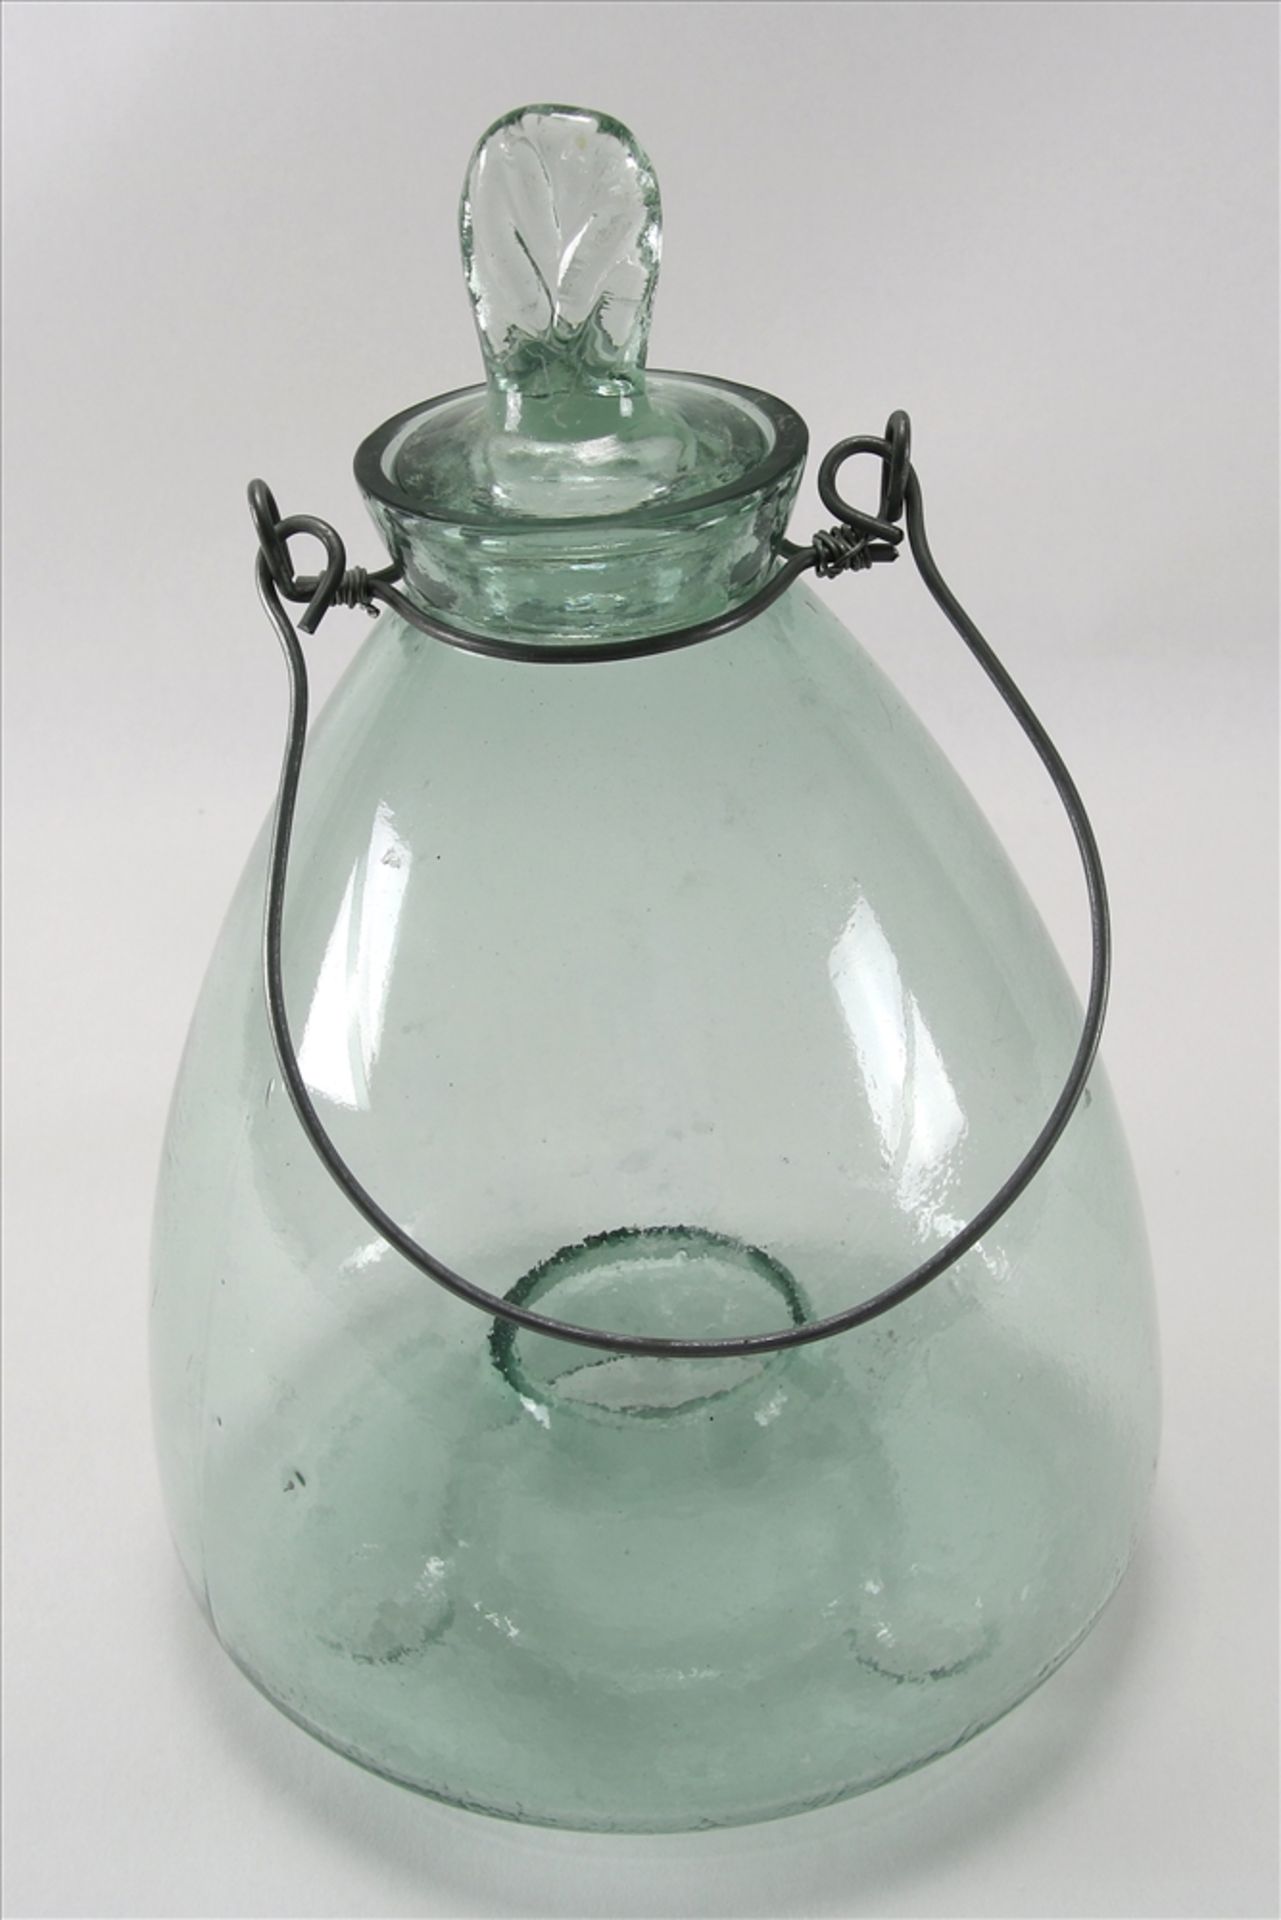 Wespenfalle Um 1900. Klarglas mit Stöpsel und Drahtaufhängung. Durchmesser ca. 19 cm, Höhe ca. 27